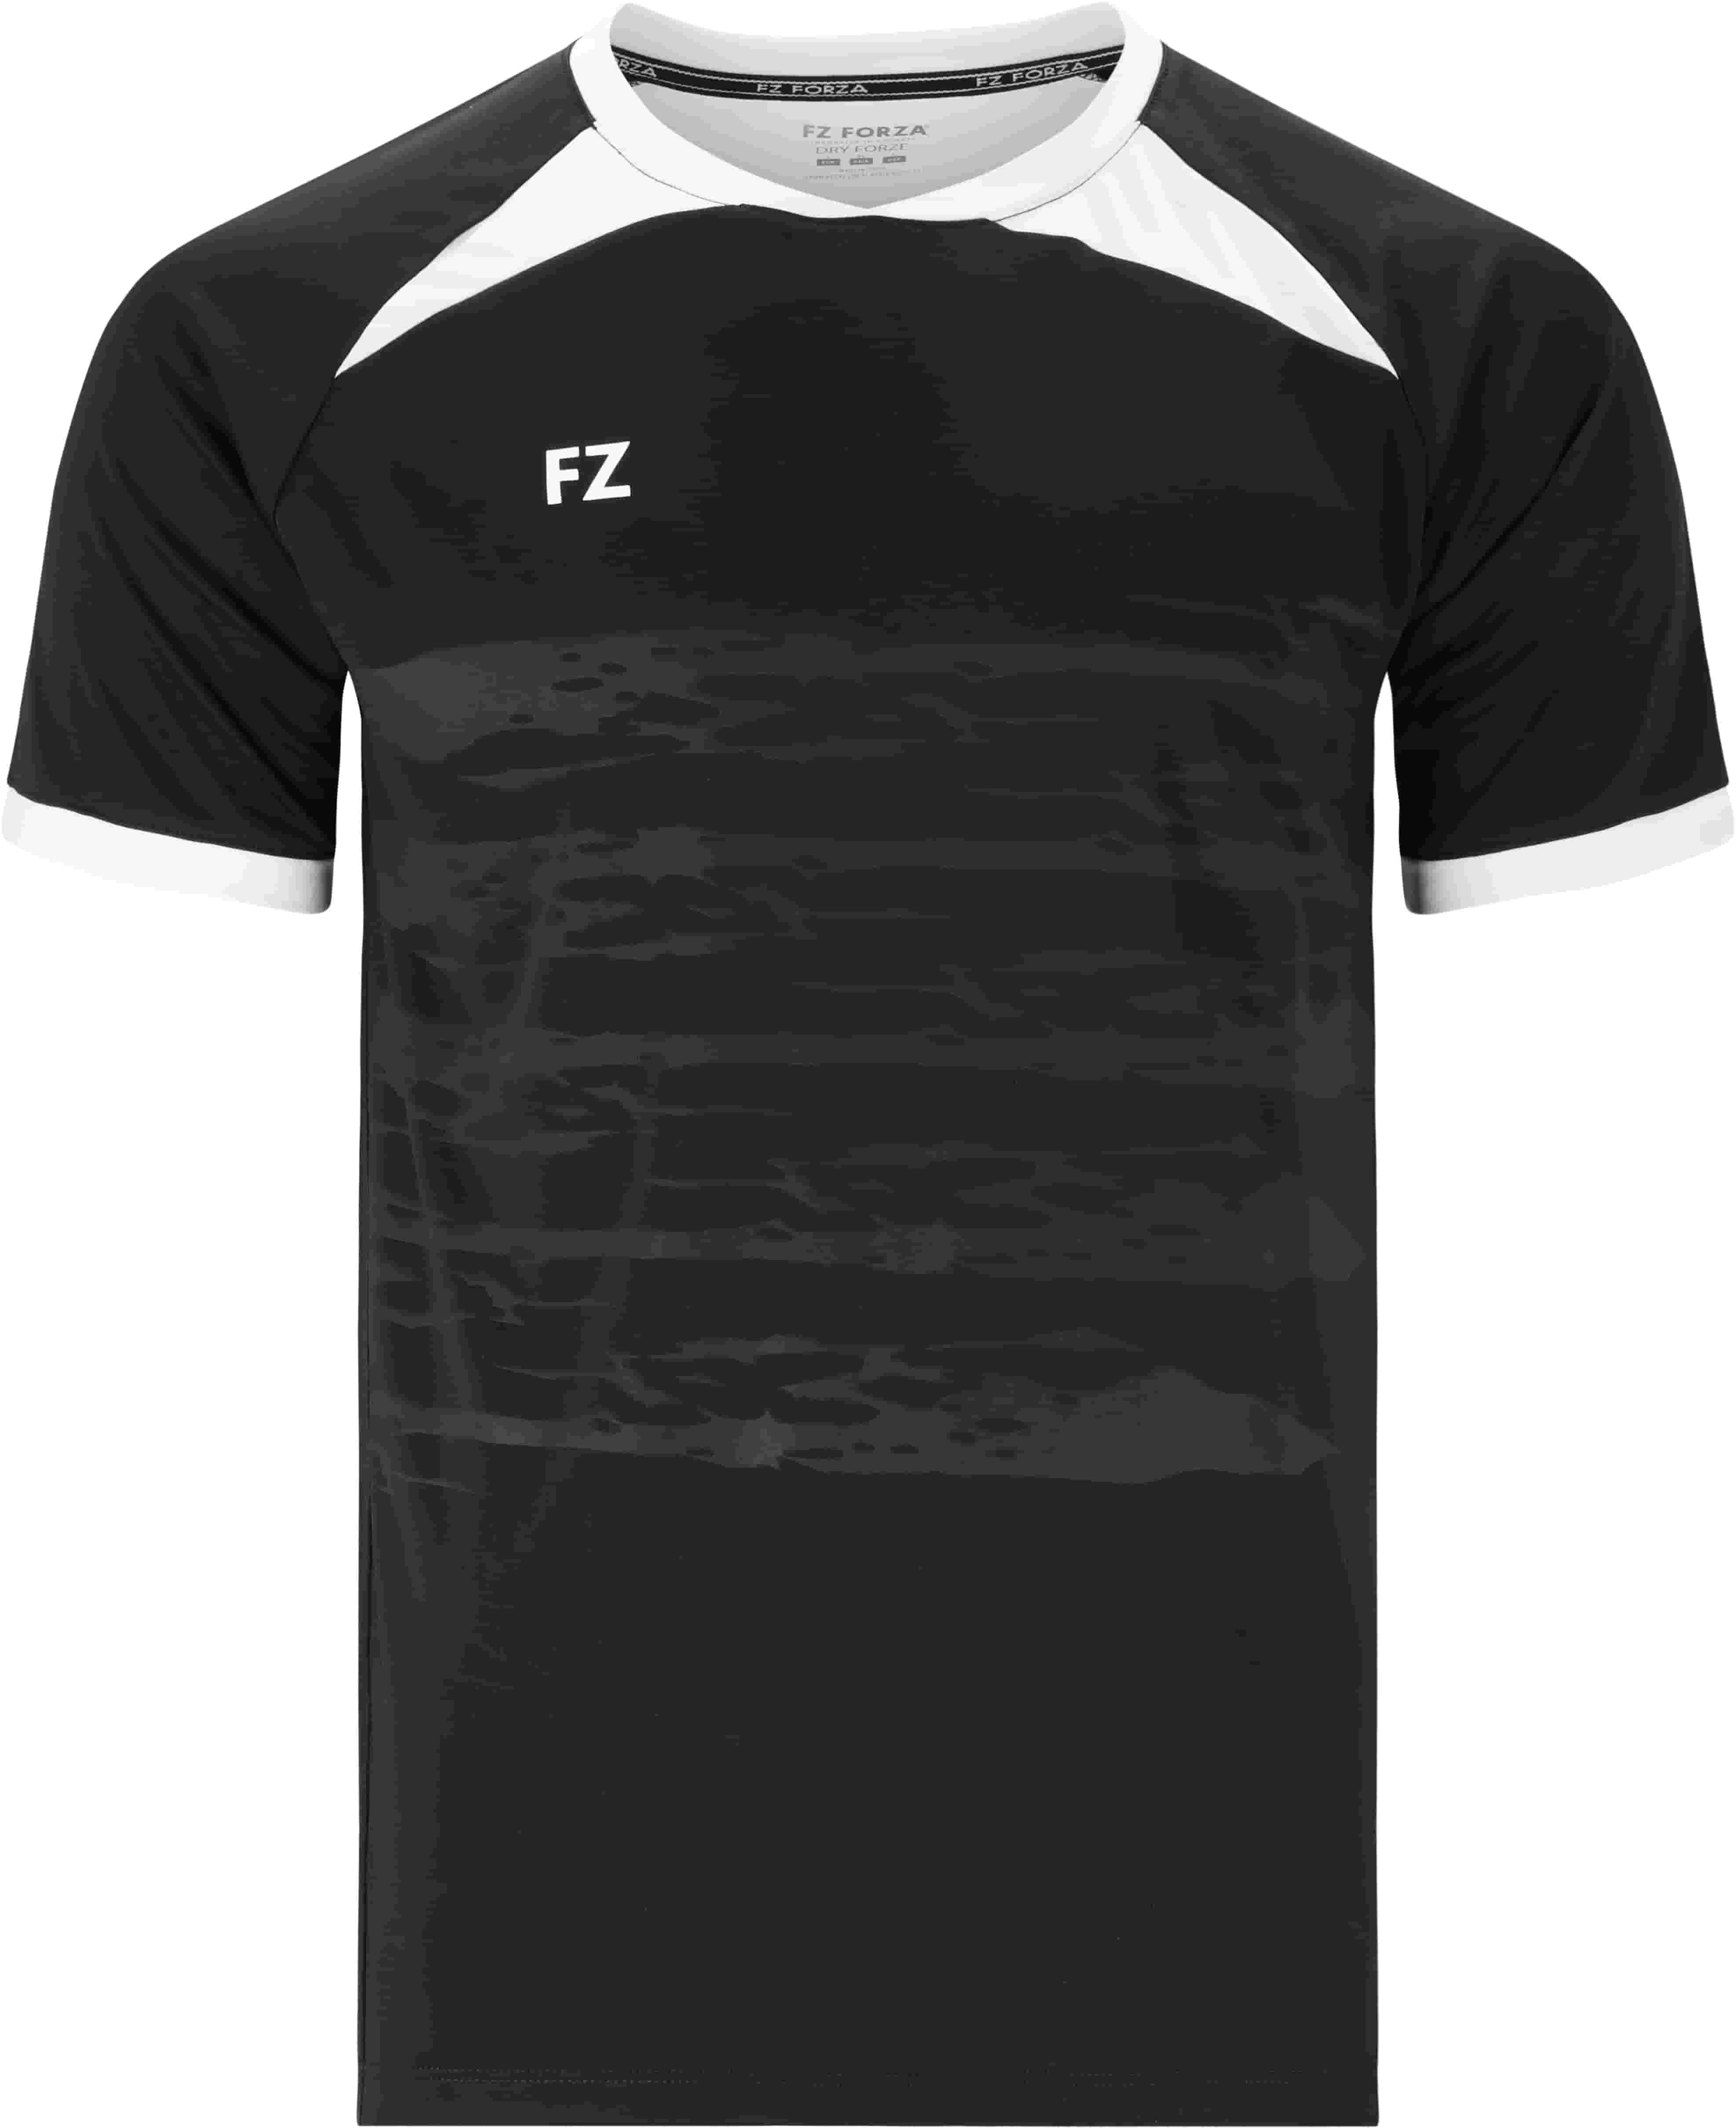 FZ FORZA Agentin M T-Shirt - Schwarz